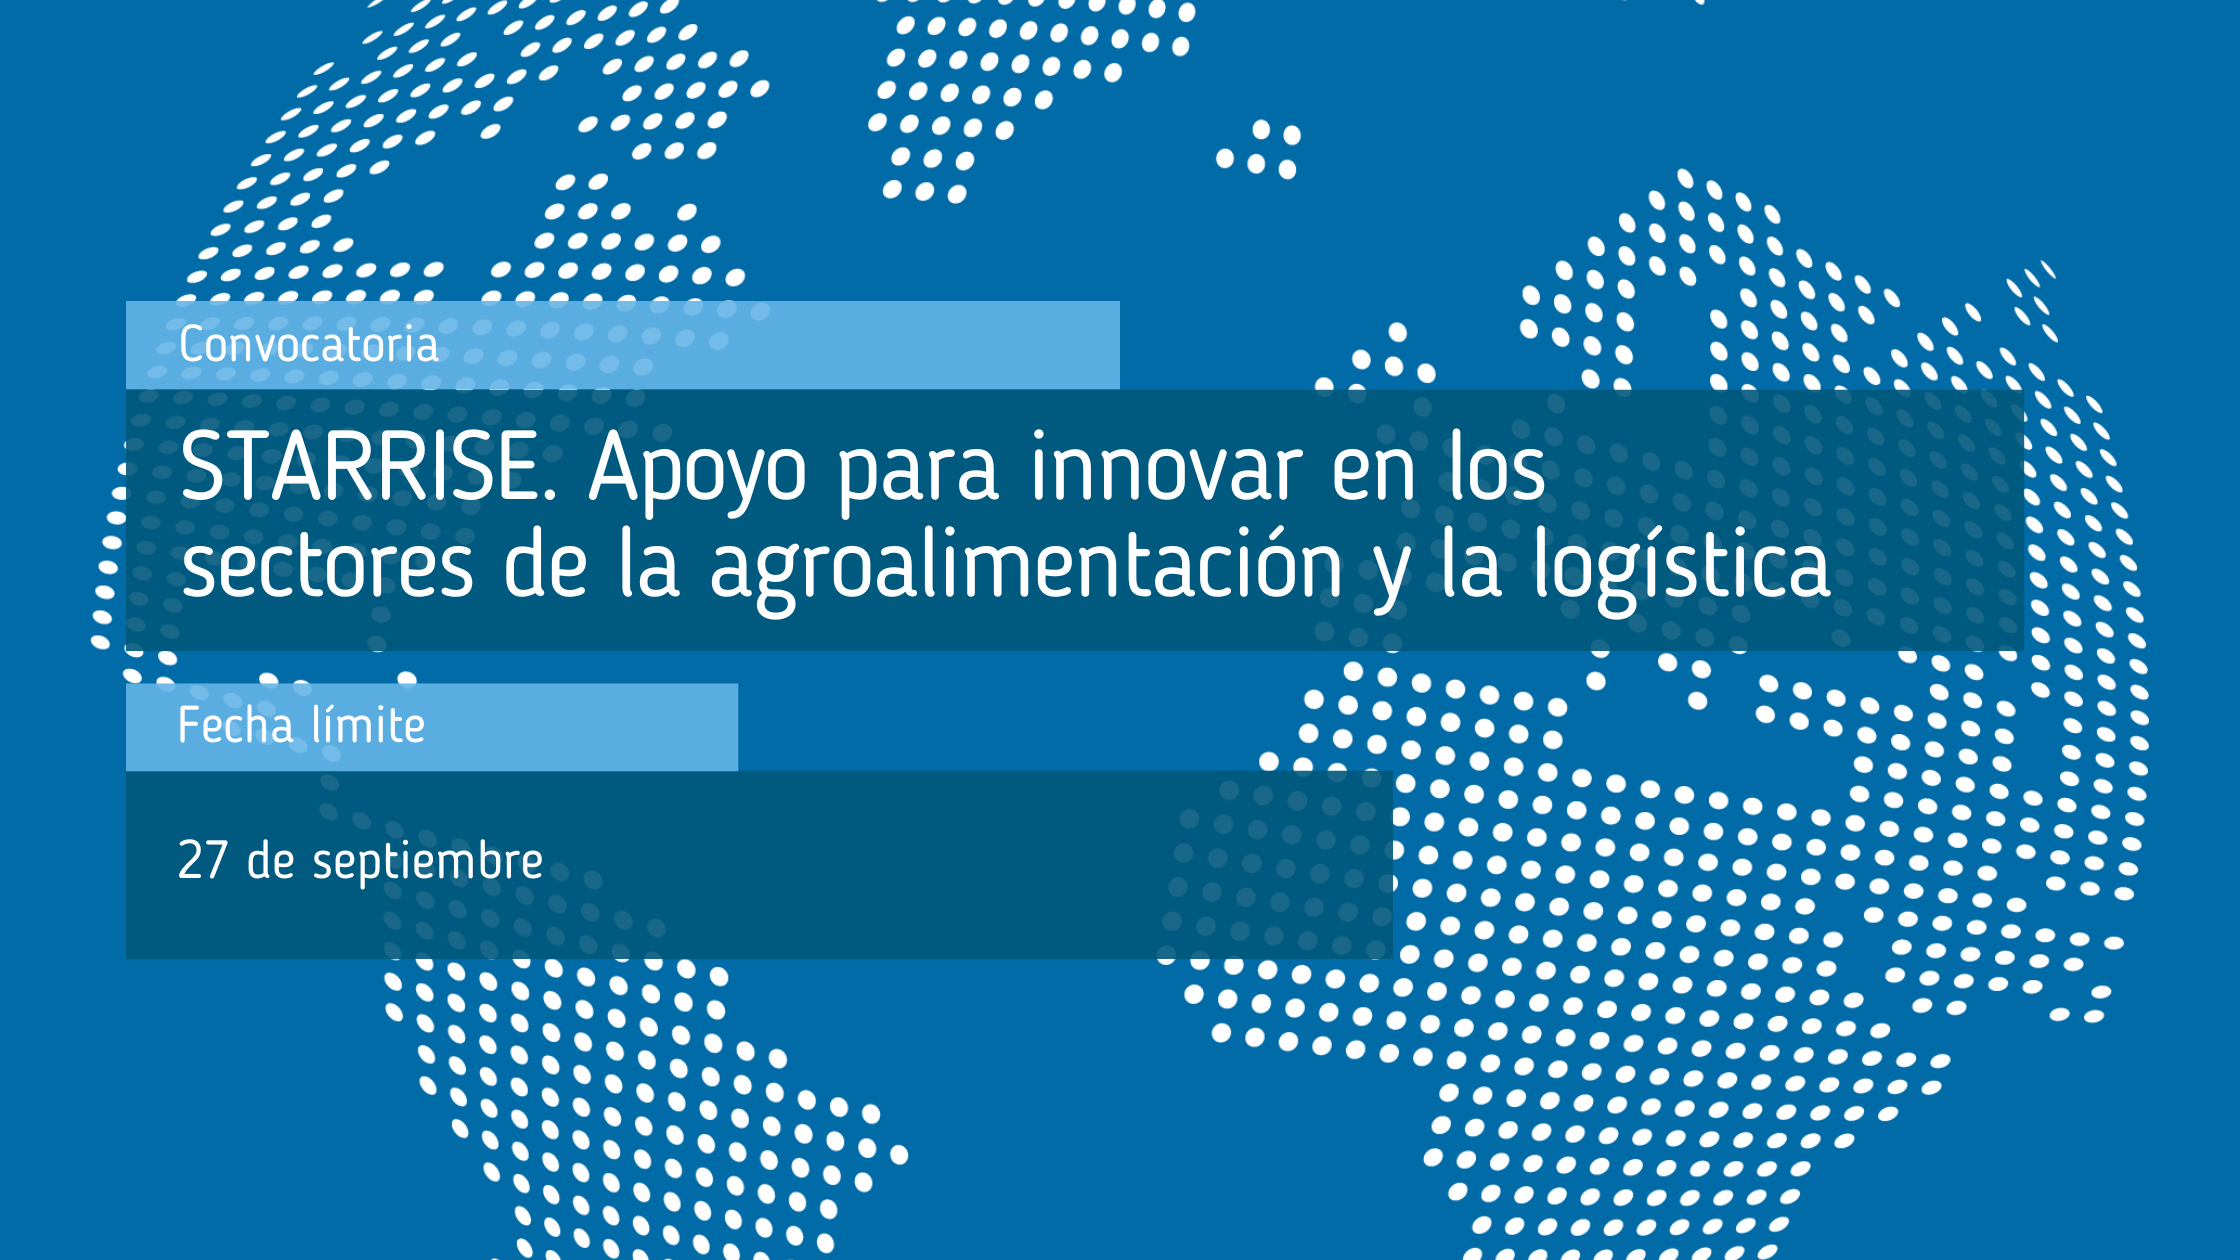 STARRISE_Apoyo_para_innovar_en_los_sectores_de_la_agroalimentación_y_la_logística